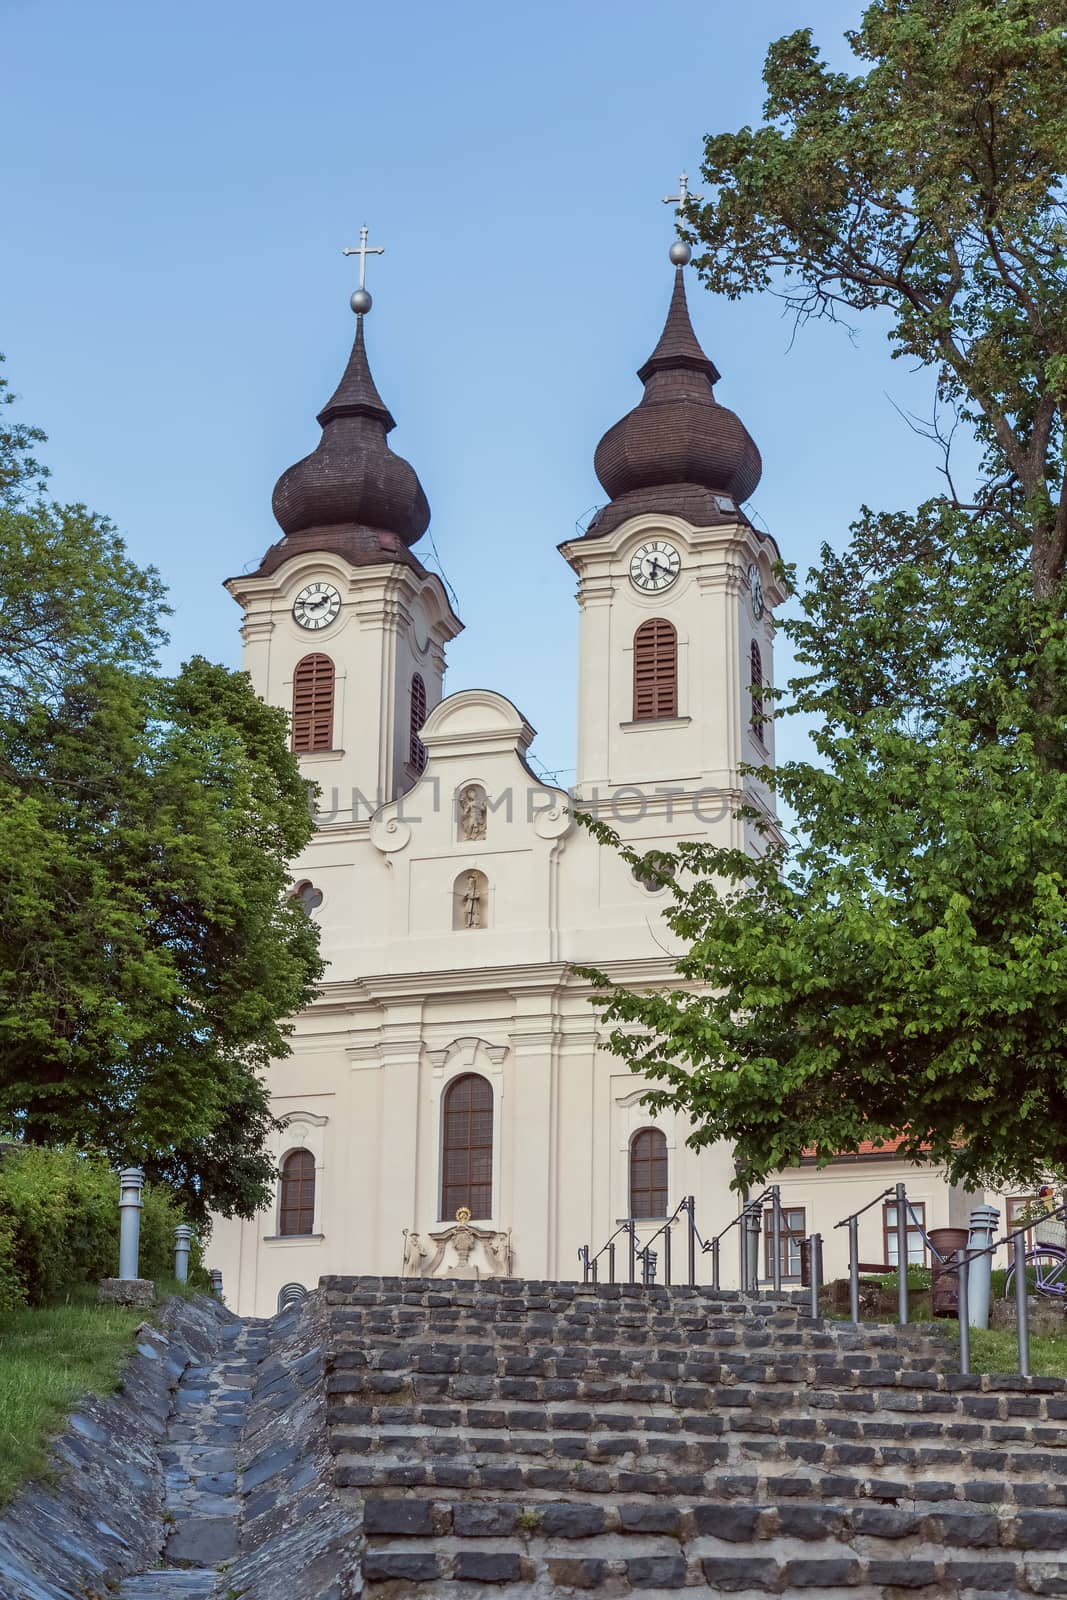 View of Tihany Abbey at Lake Balaton in Hungary by Digoarpi